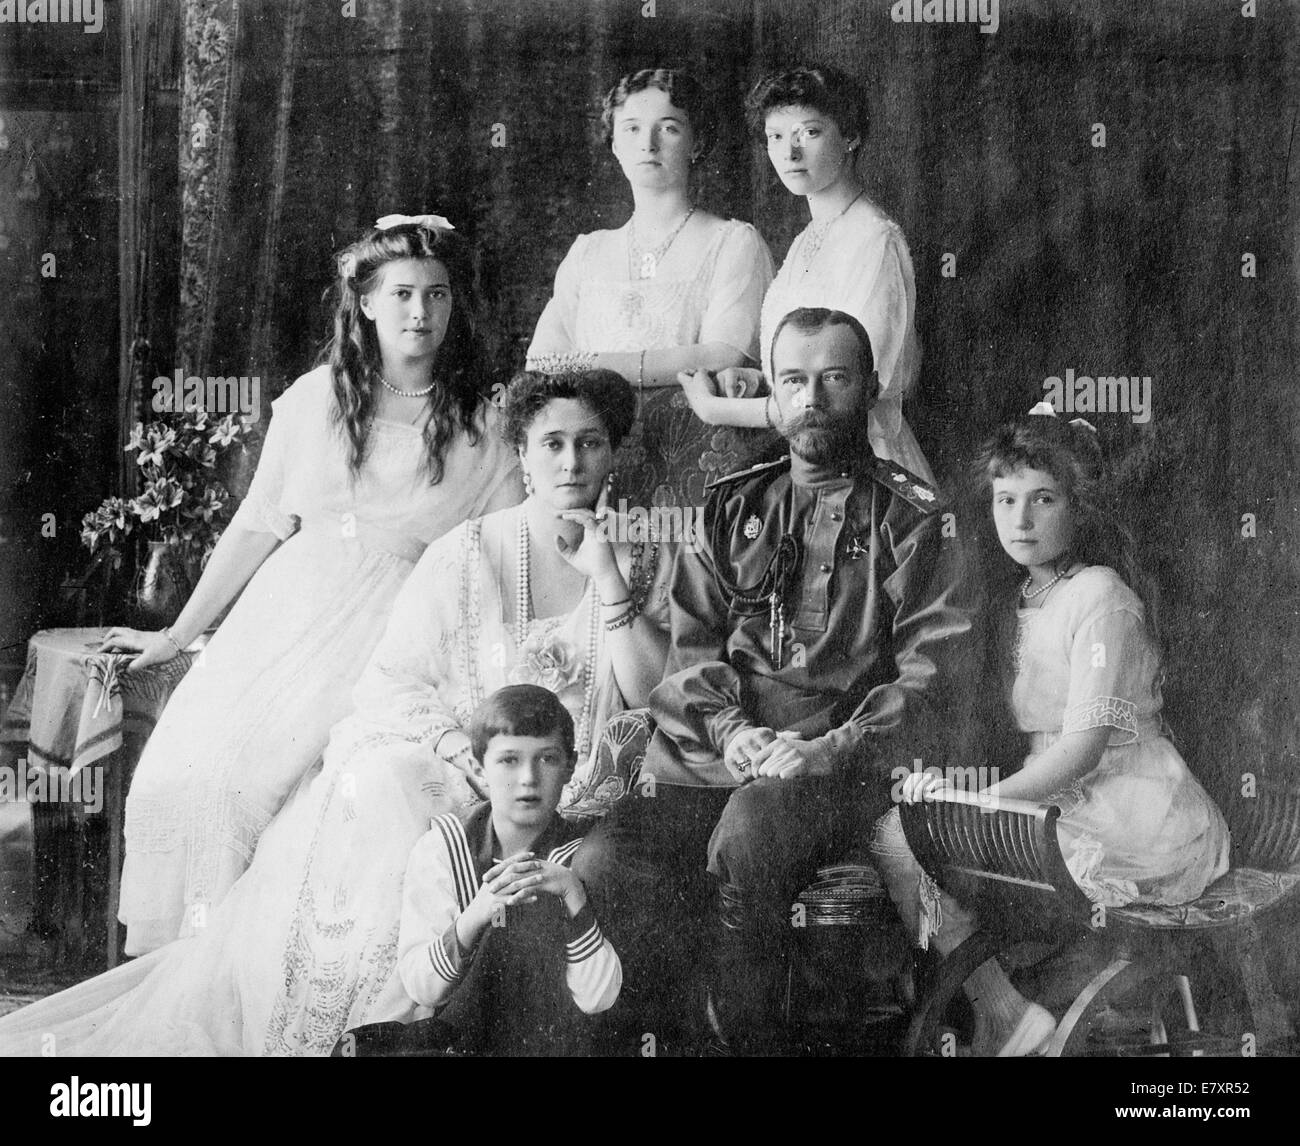 Royal famiglia russa - membri del Romanovs, l'ultimo della famiglia reale in Russia tra cui: seduti da sinistra a destra) Marie, la Regina Alexandra, lo Zar Nicola II, Anastasia, Alexei (anteriore), e in piedi (da sinistra a destra), Olga e Tatiana, circa 1914 Foto Stock